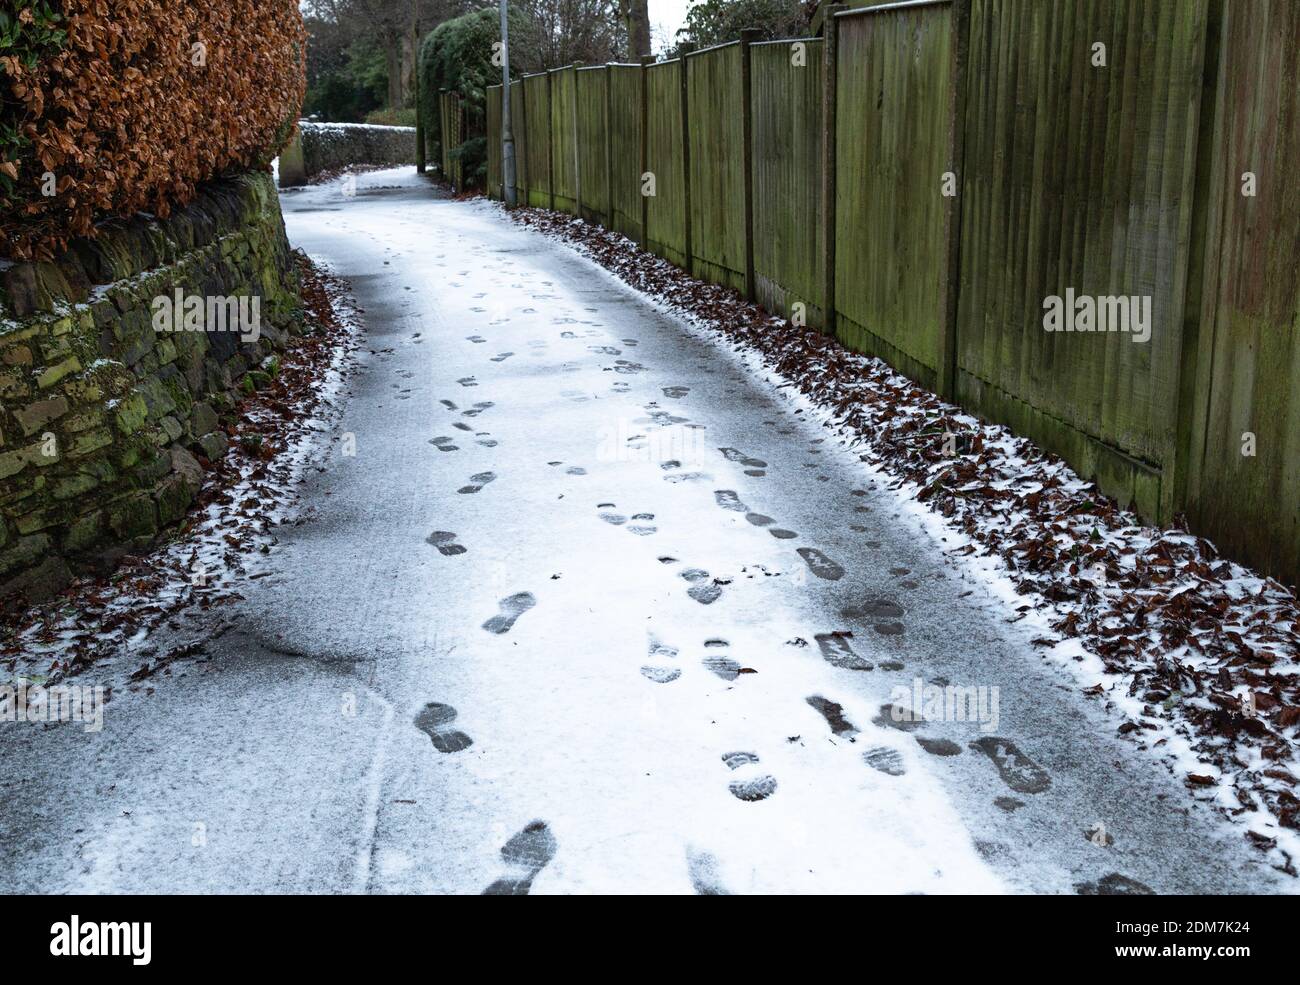 Empreintes de pas dans la neige sur un sentier du Yorkshire, en Angleterre. Banque D'Images